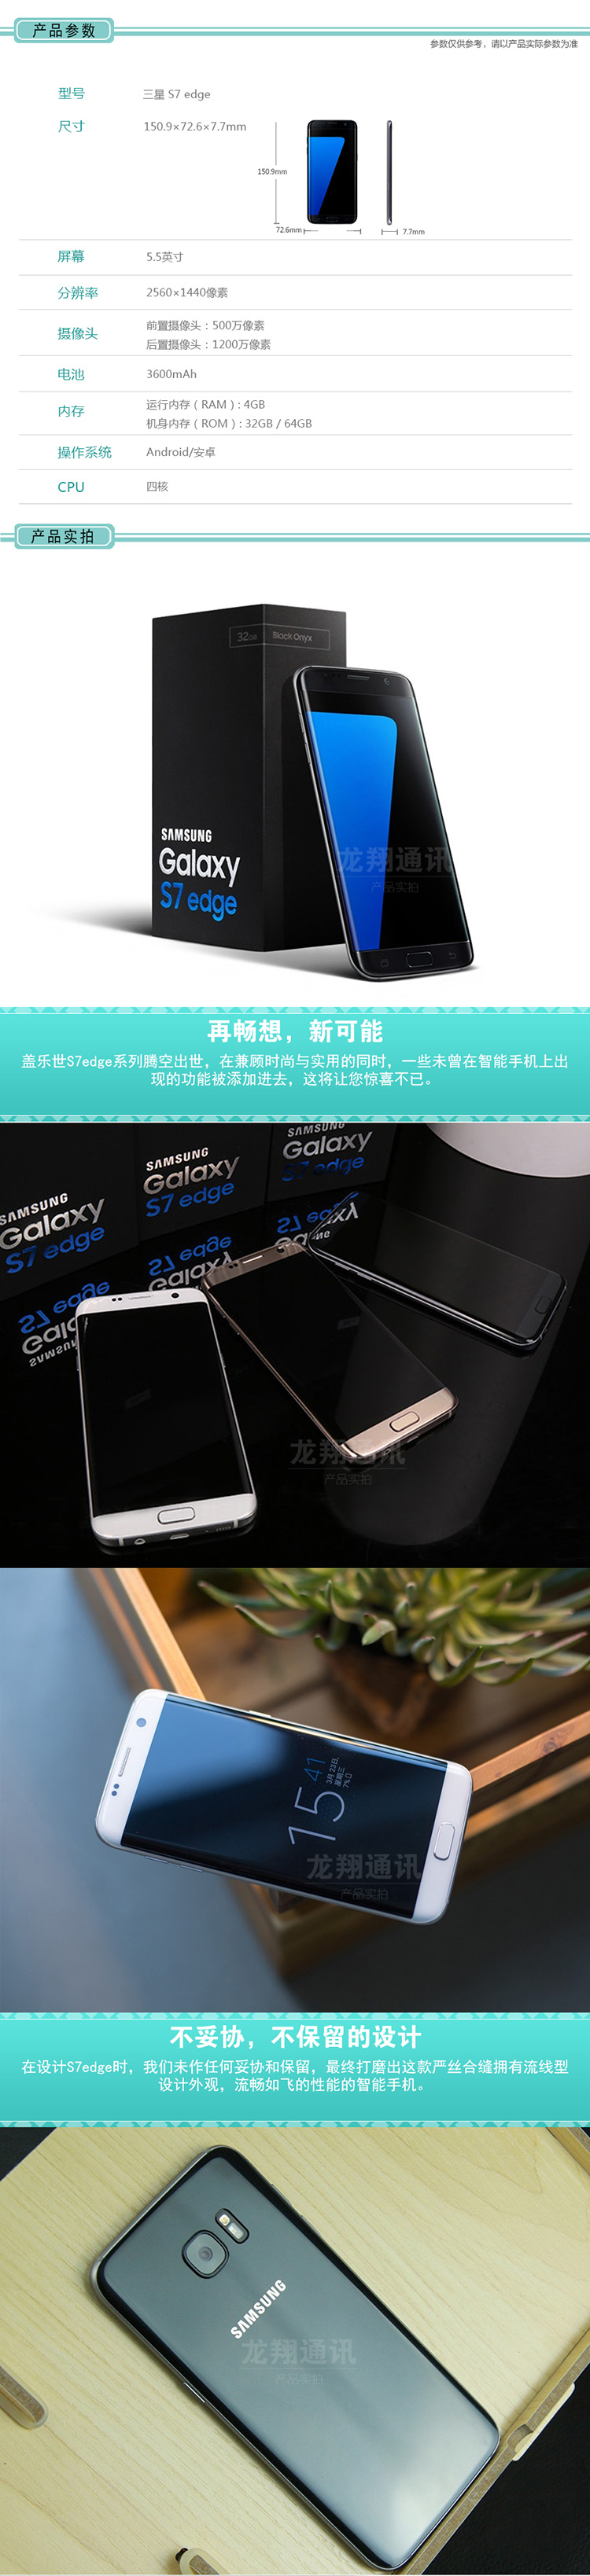 三星GALAXY S7 Edge G9350 32G 全网通 曲面侧屏 4G智能手机 白色